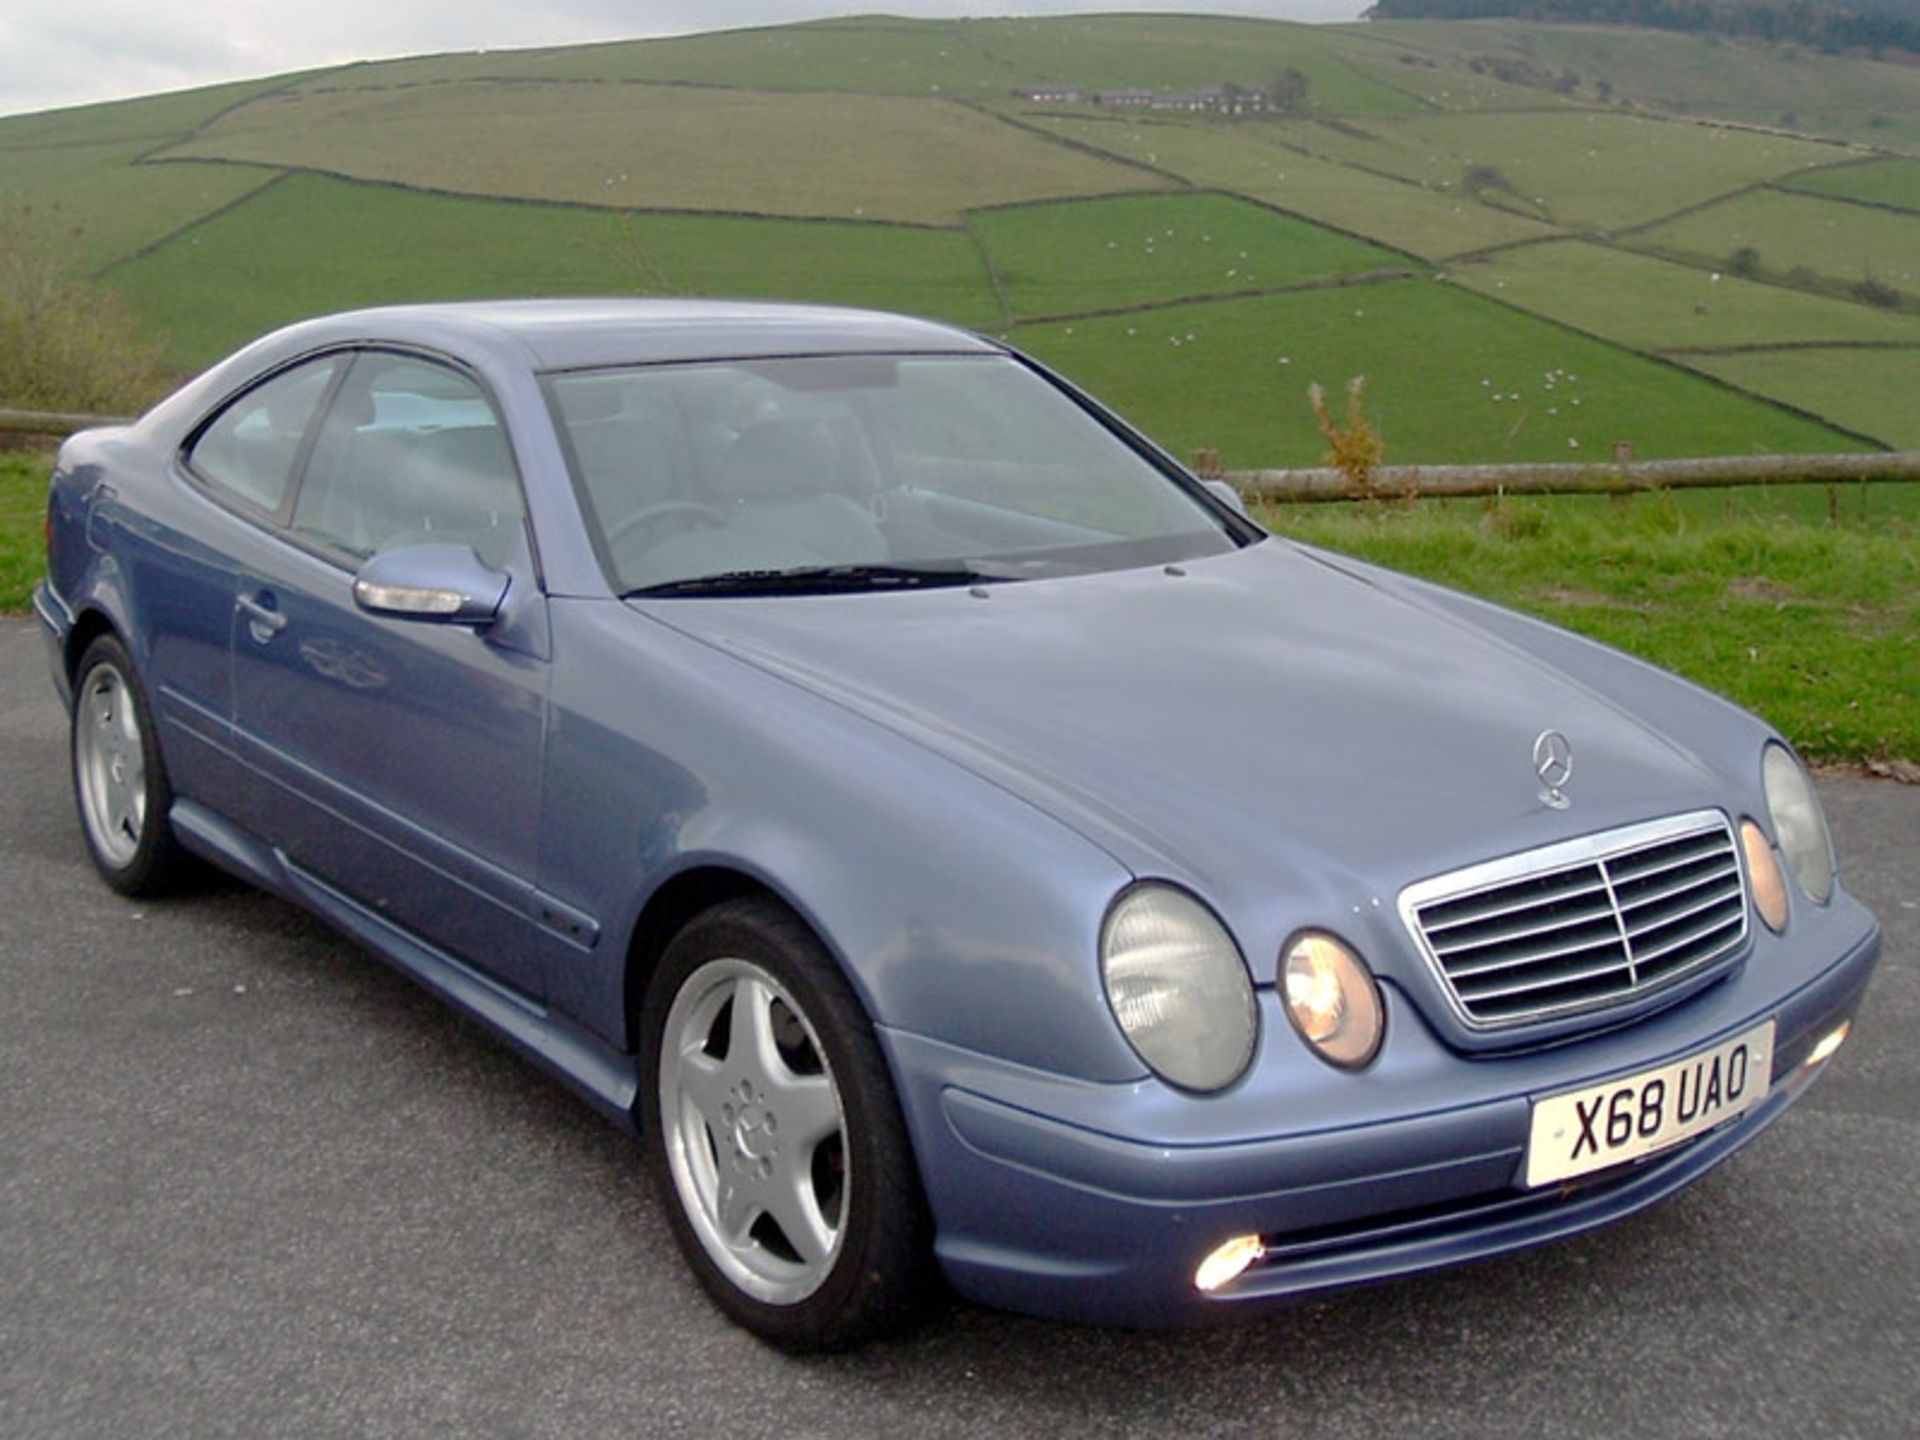 2001 Mercedes-Benz CLK 430 Avantgarde - Image 2 of 5